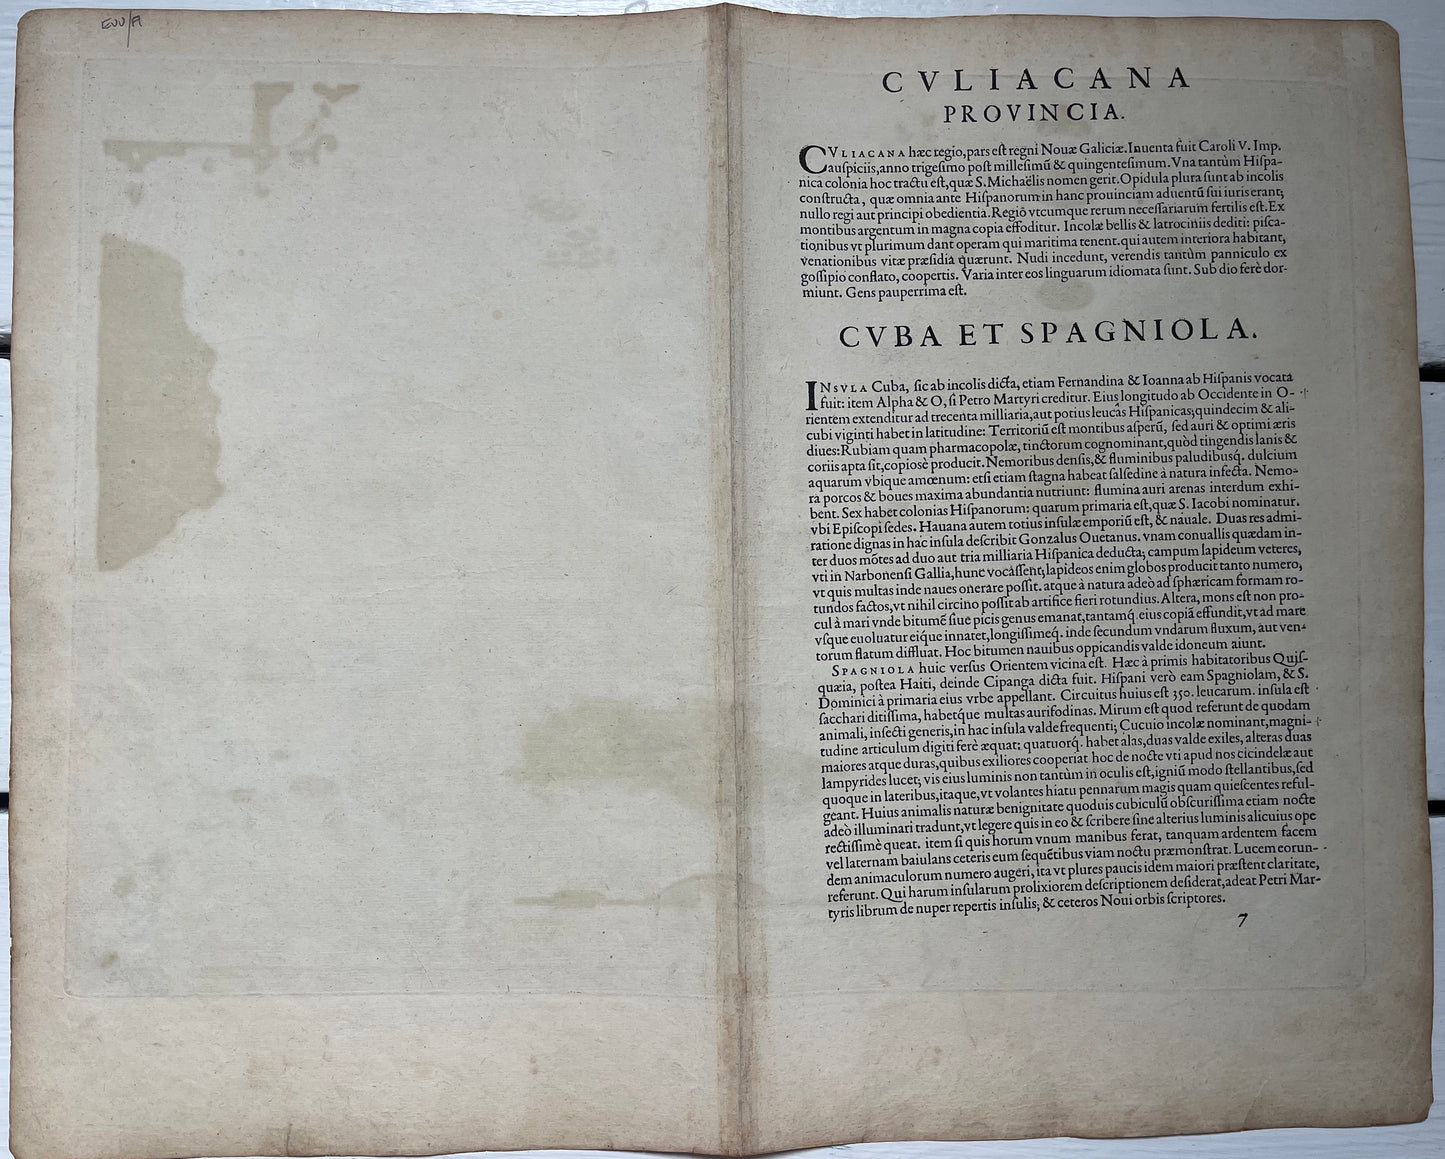 "Culiacanae, Americae Regionis / Hispaniolae, Cubae, Aliarumquae Insularum" - Mexico and the Caribbean - Ortelius - 1584